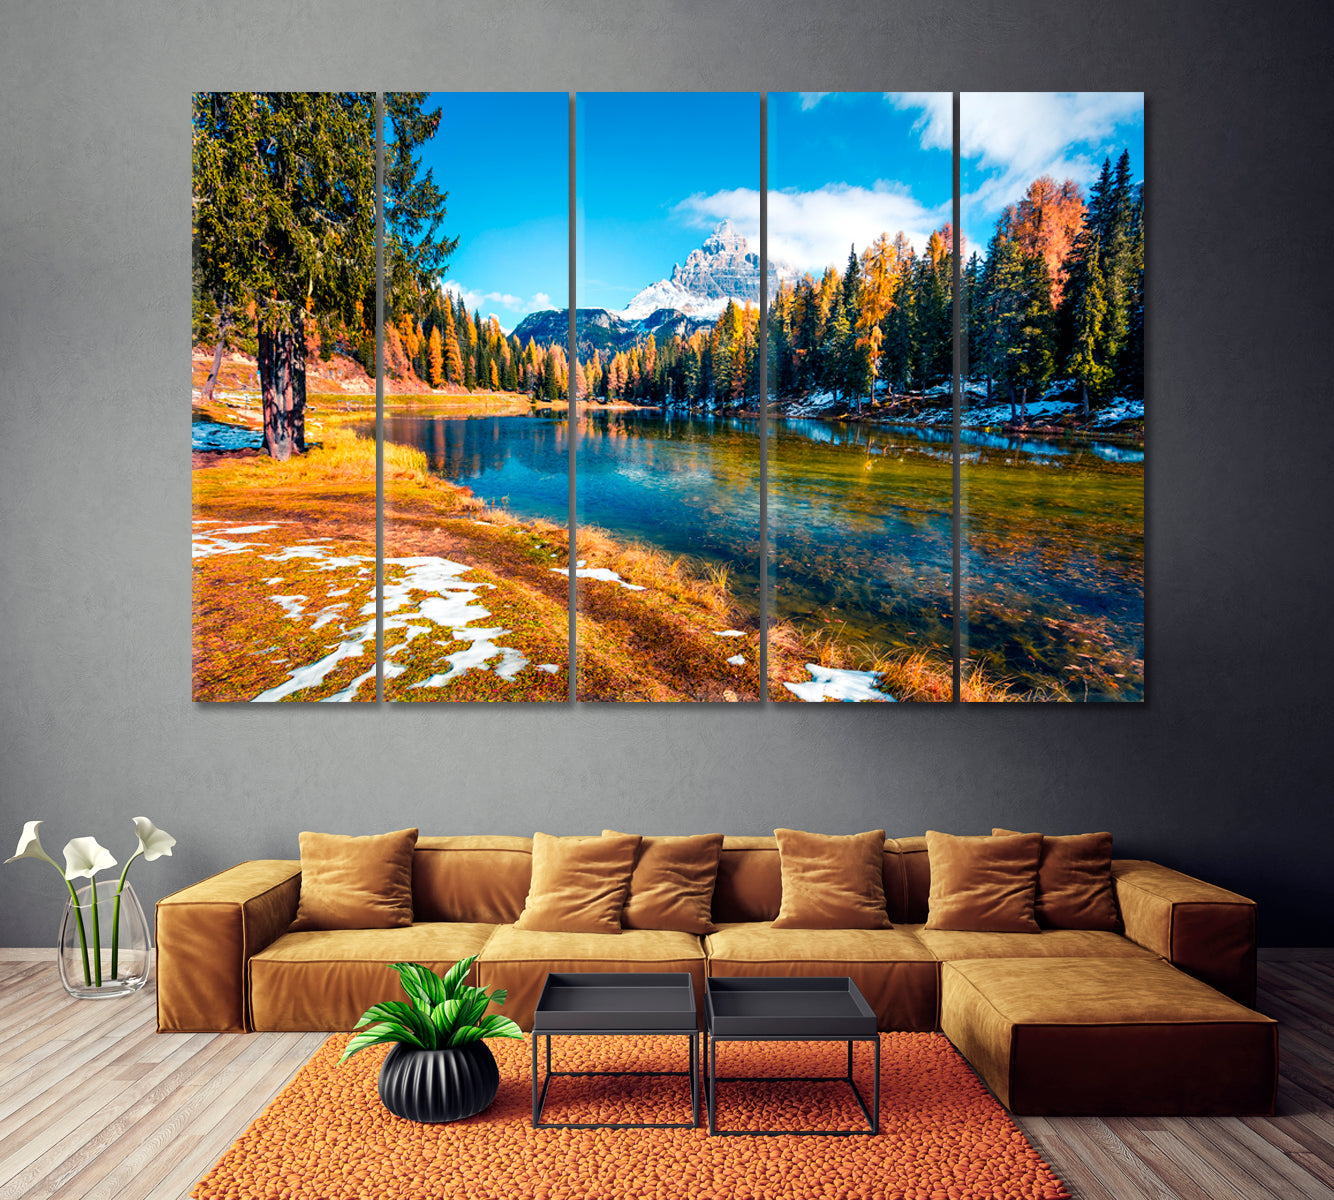 Antorno Lake with Tre Cime di Lavaredo Dolomite Alps Canvas Print ArtLexy 5 Panels 36"x24" inches 